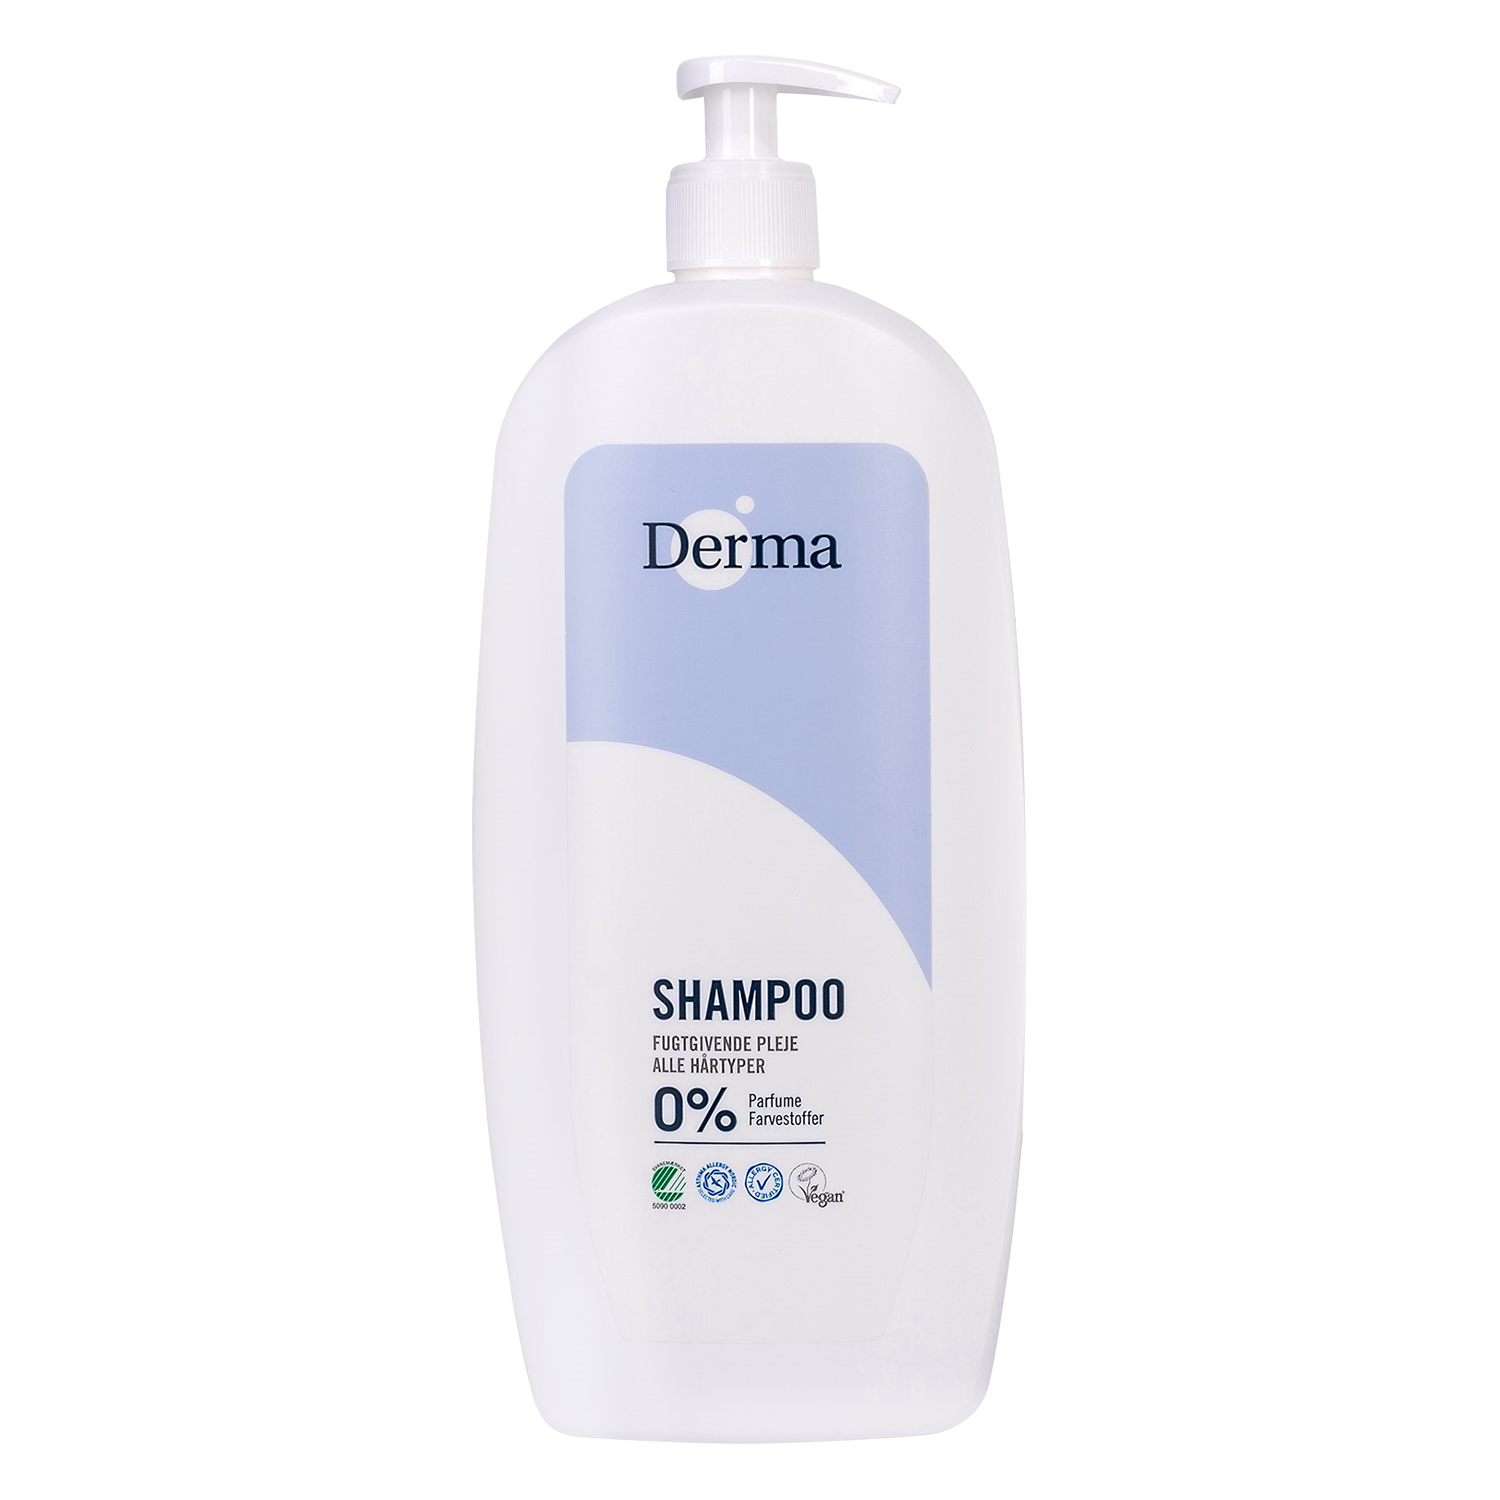 derma family szampon do włosów wizaz